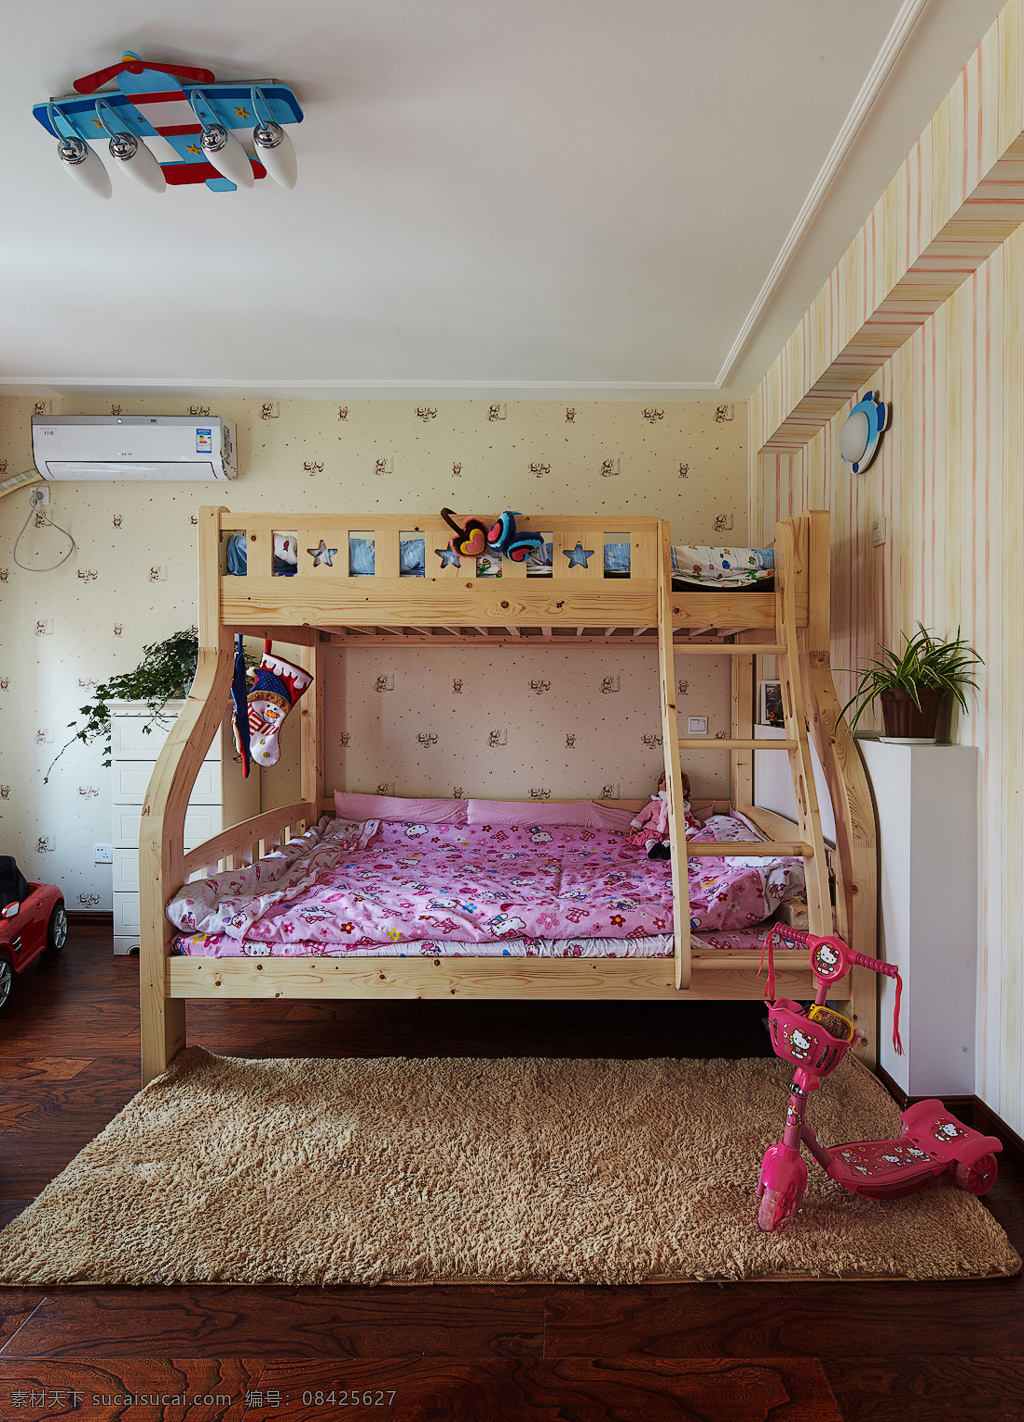 美式 学生 卧室 双层床 设计图 家居 家居生活 室内设计 装修 室内 家具 装修设计 环境设计